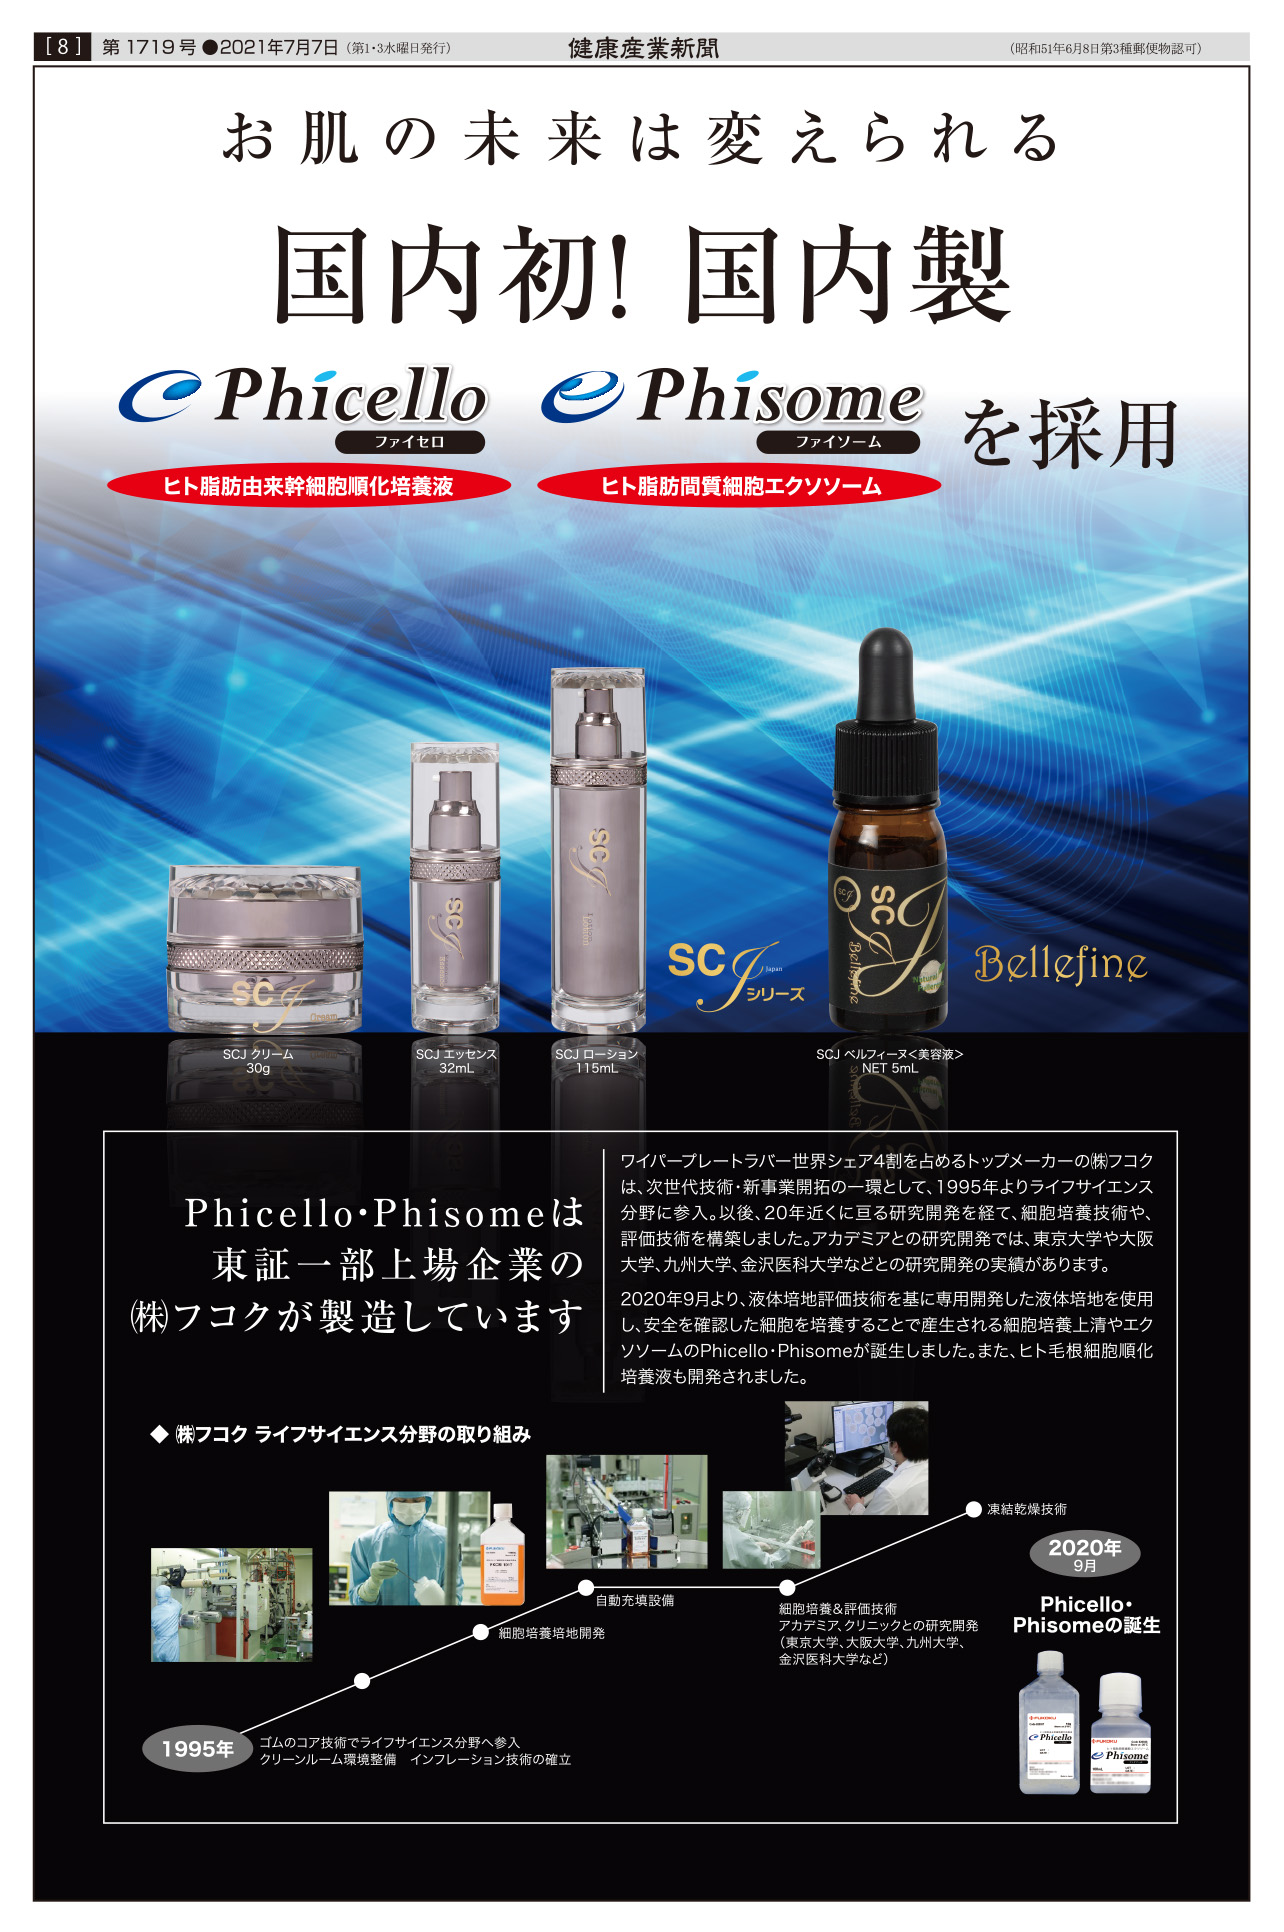 エンチーム株式会社の化粧品に Phicello＆Phisomeが採用されています